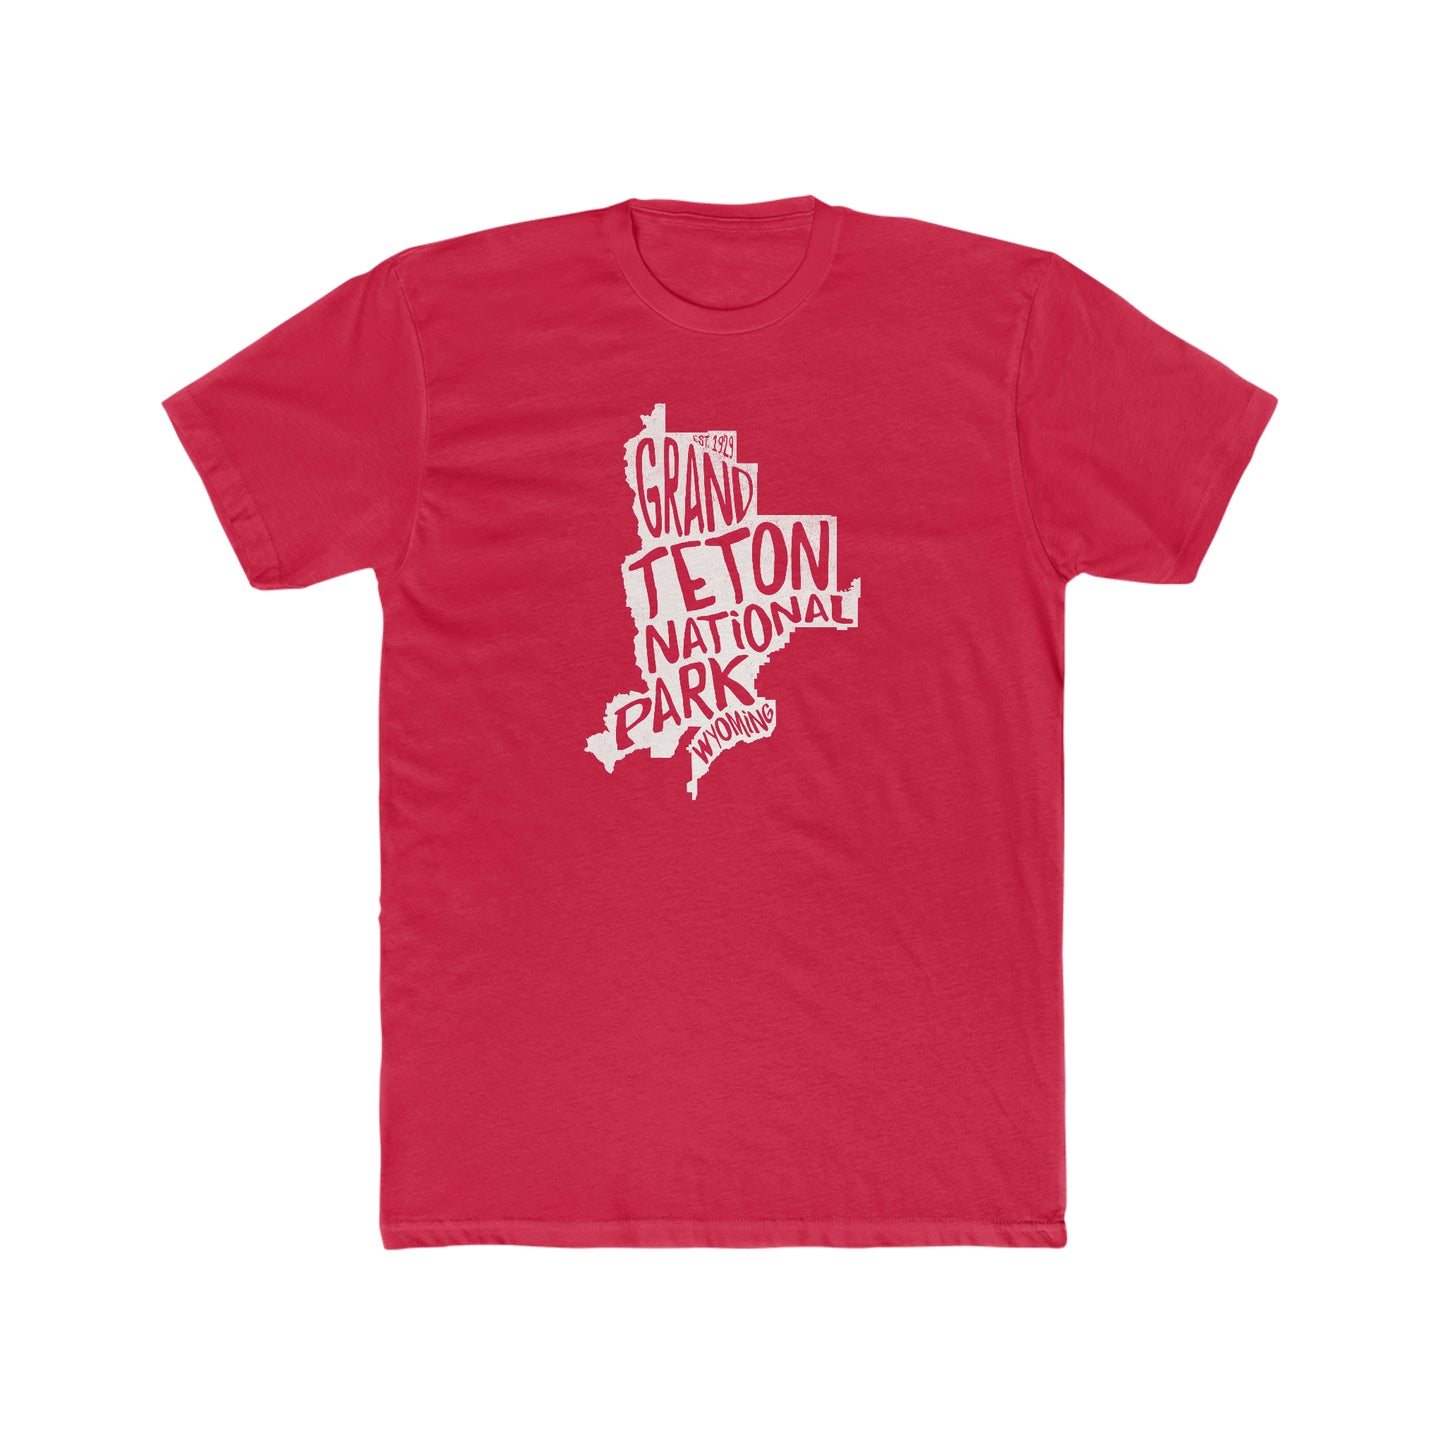 Grand Teton National Park T-Shirt - Map